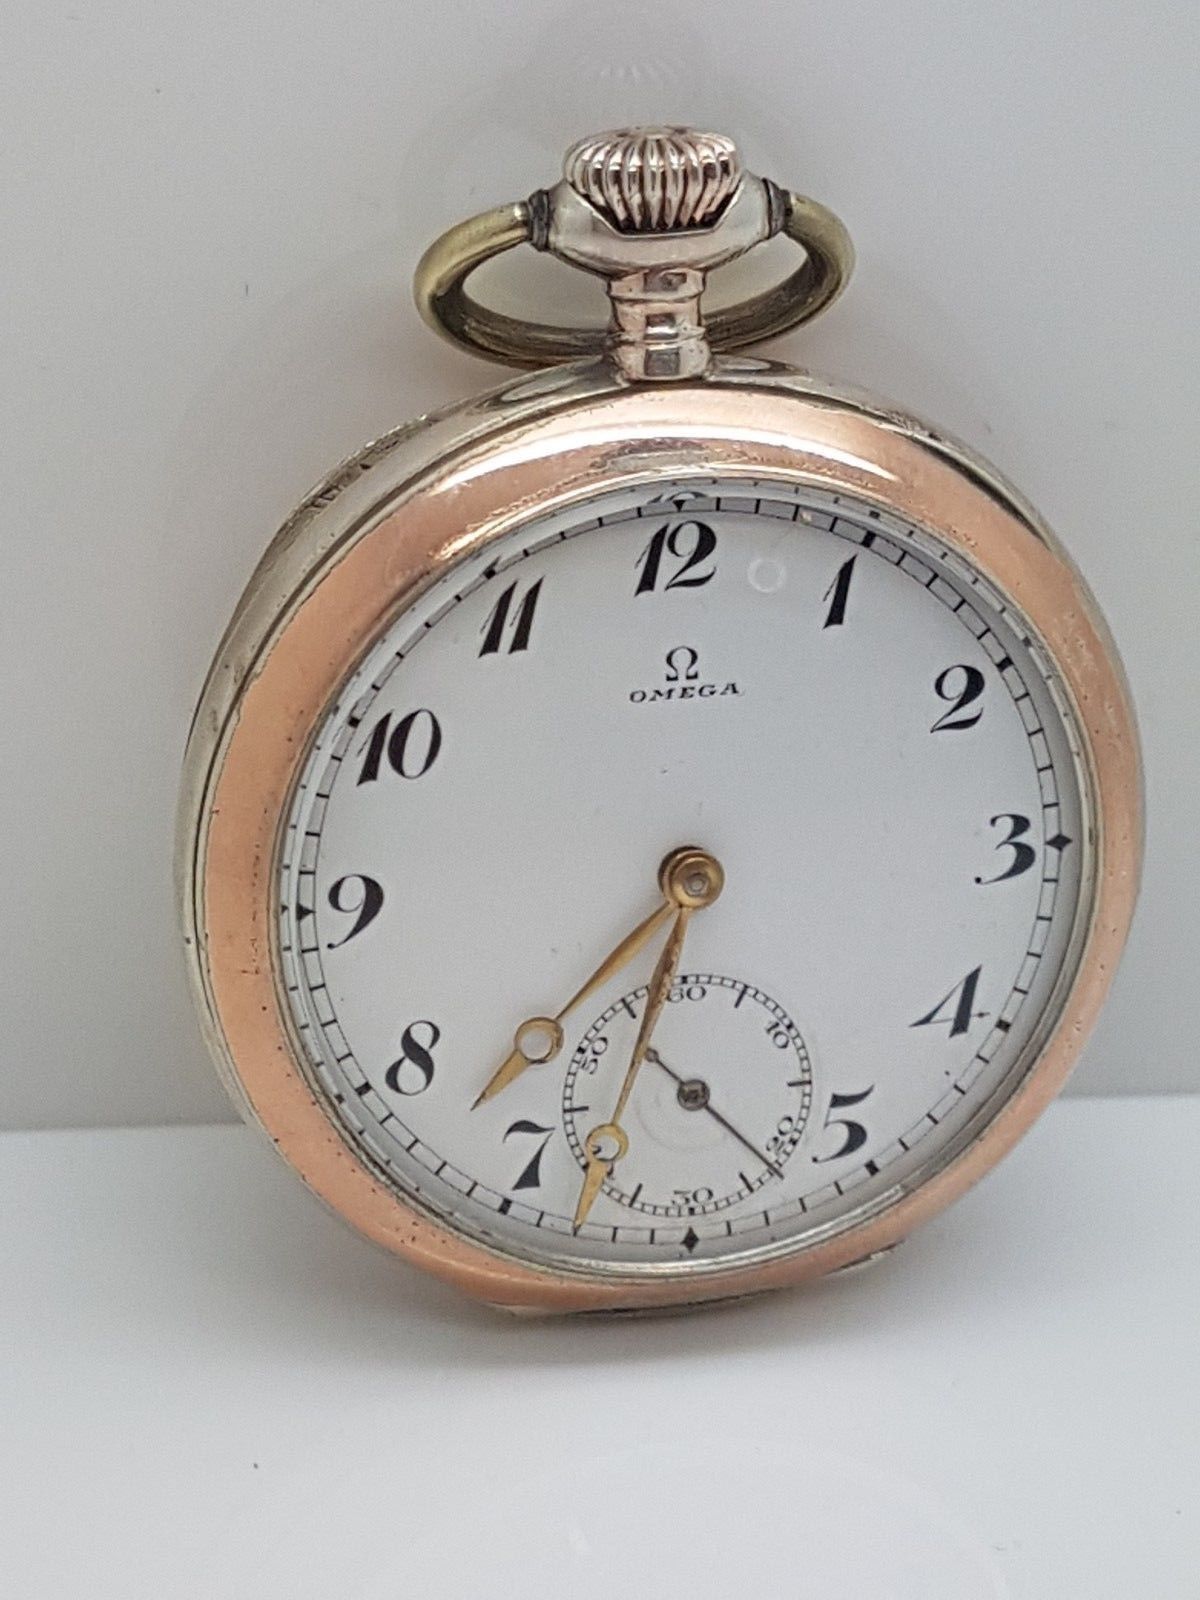 antique omega pocket watch